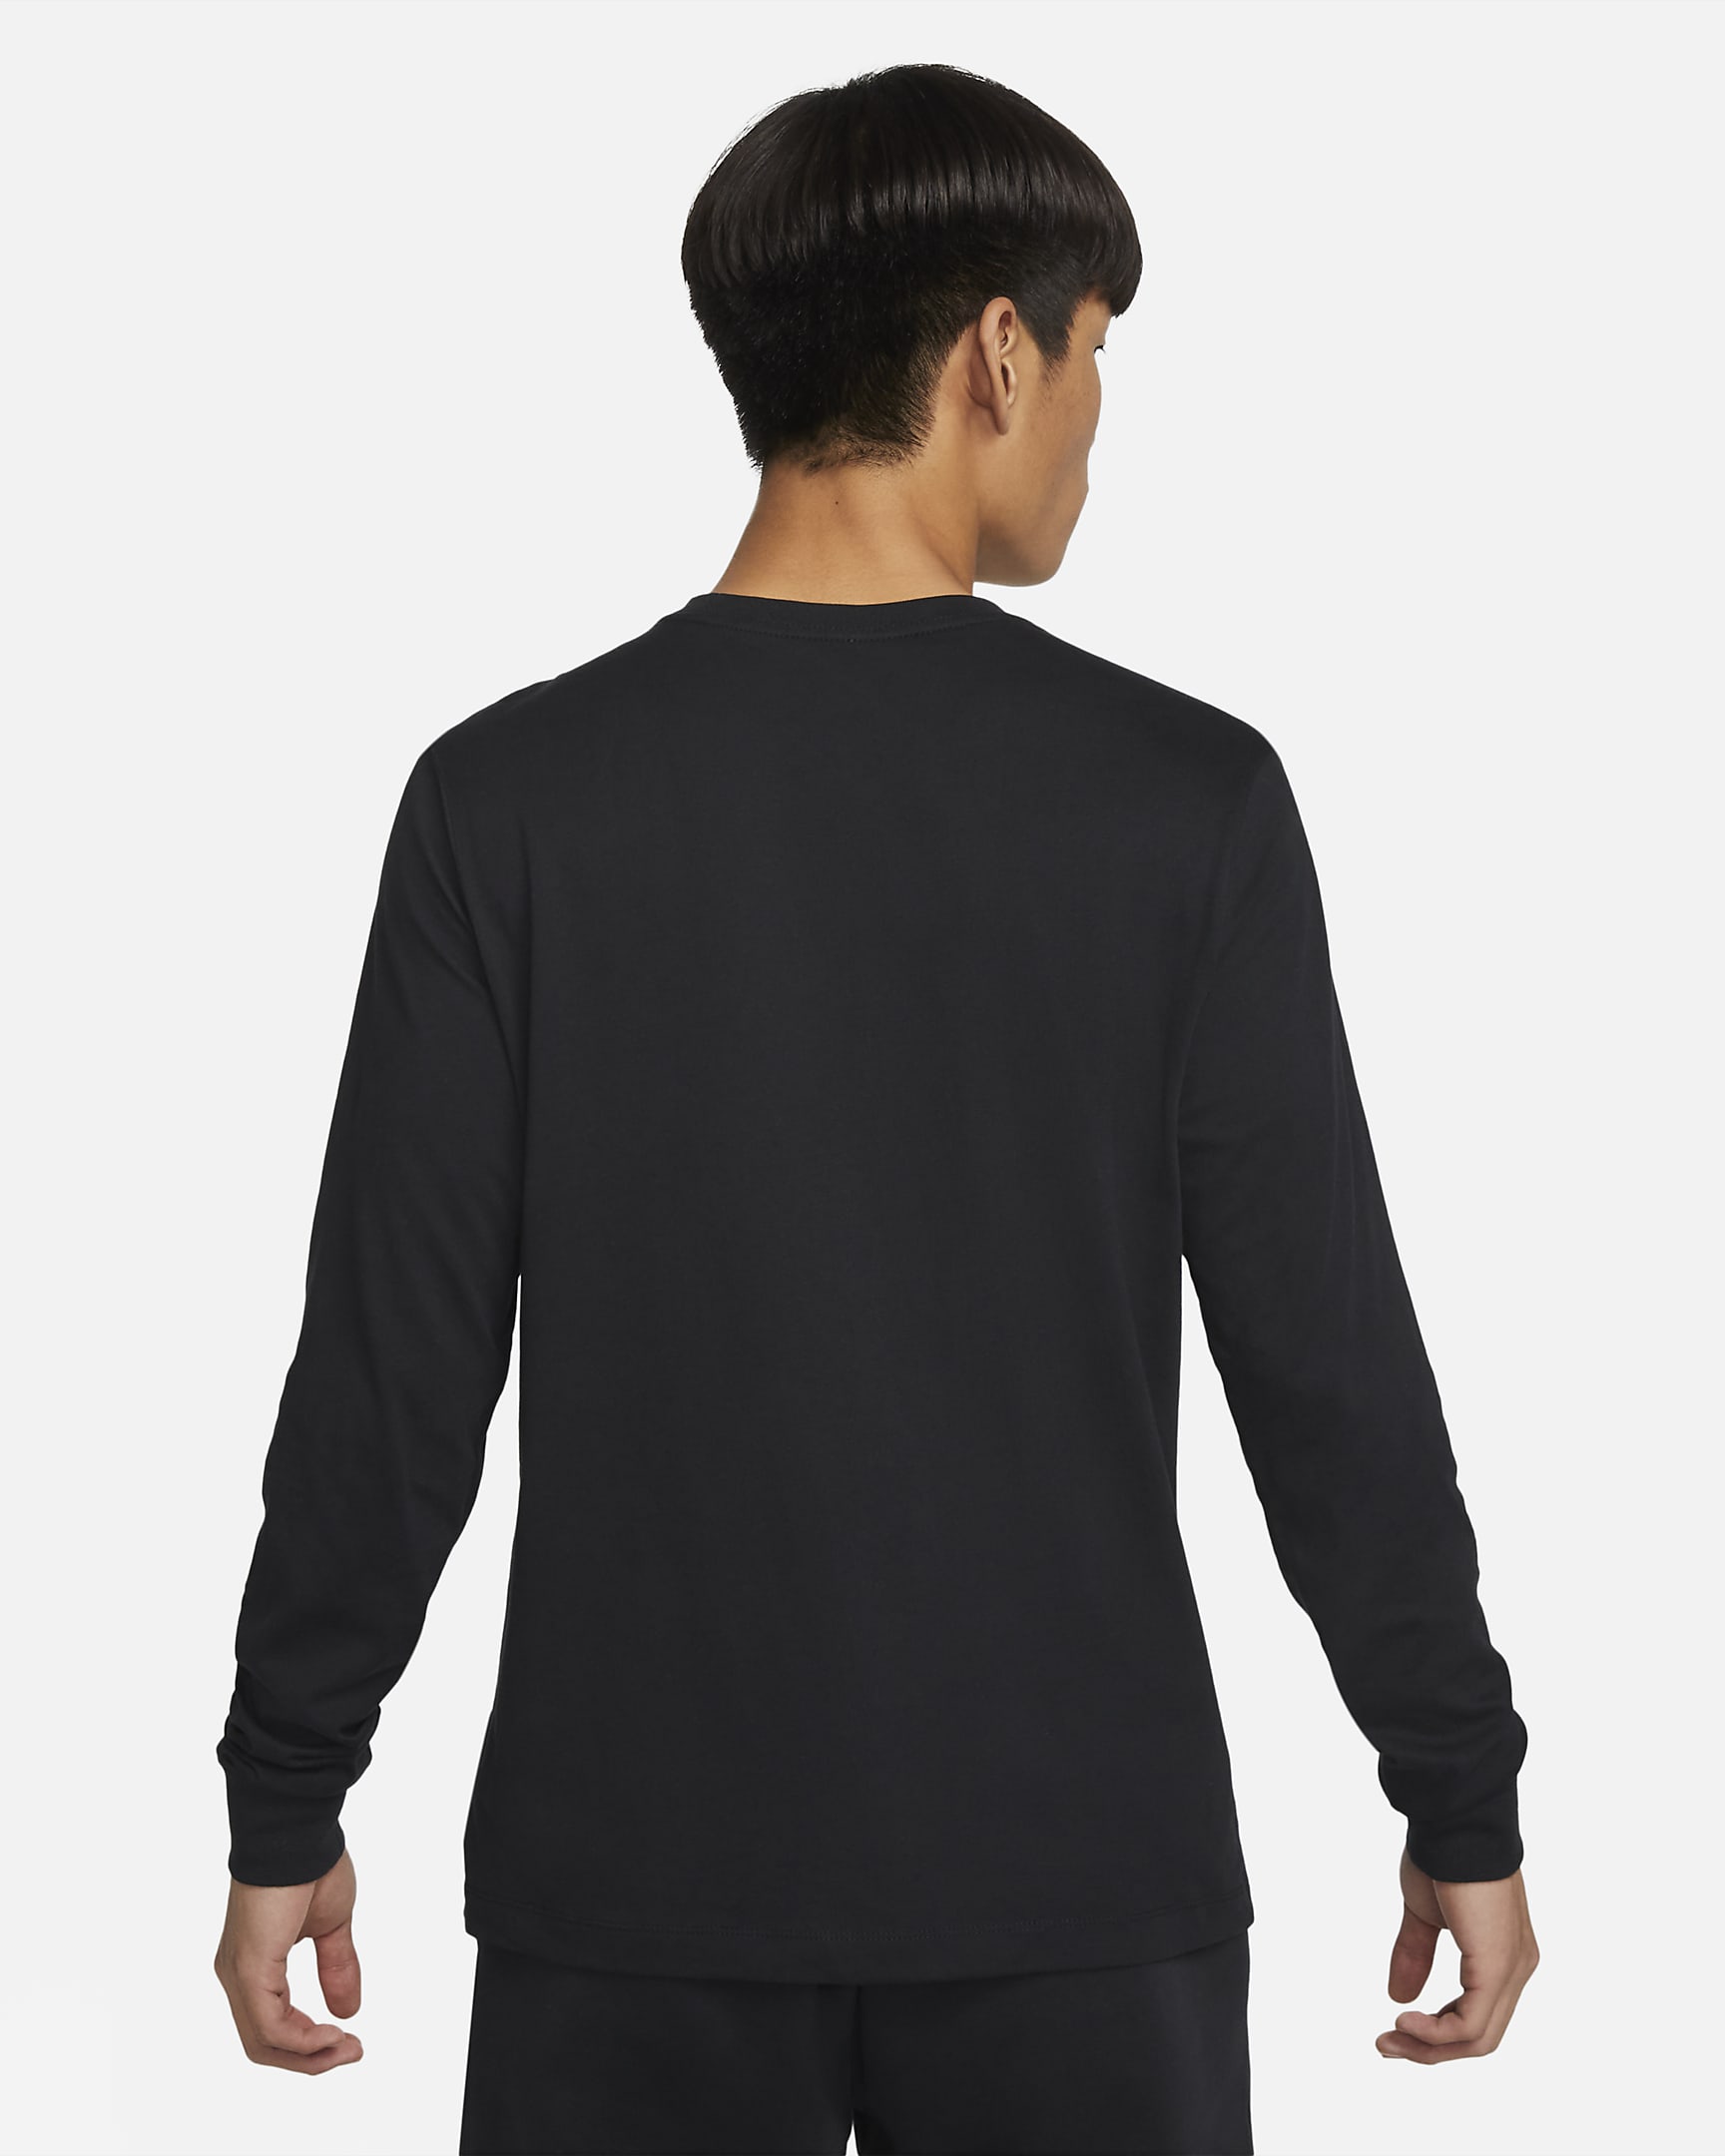 Nike Sportswear Men's Long-Sleeve T-Shirt. Nike IN